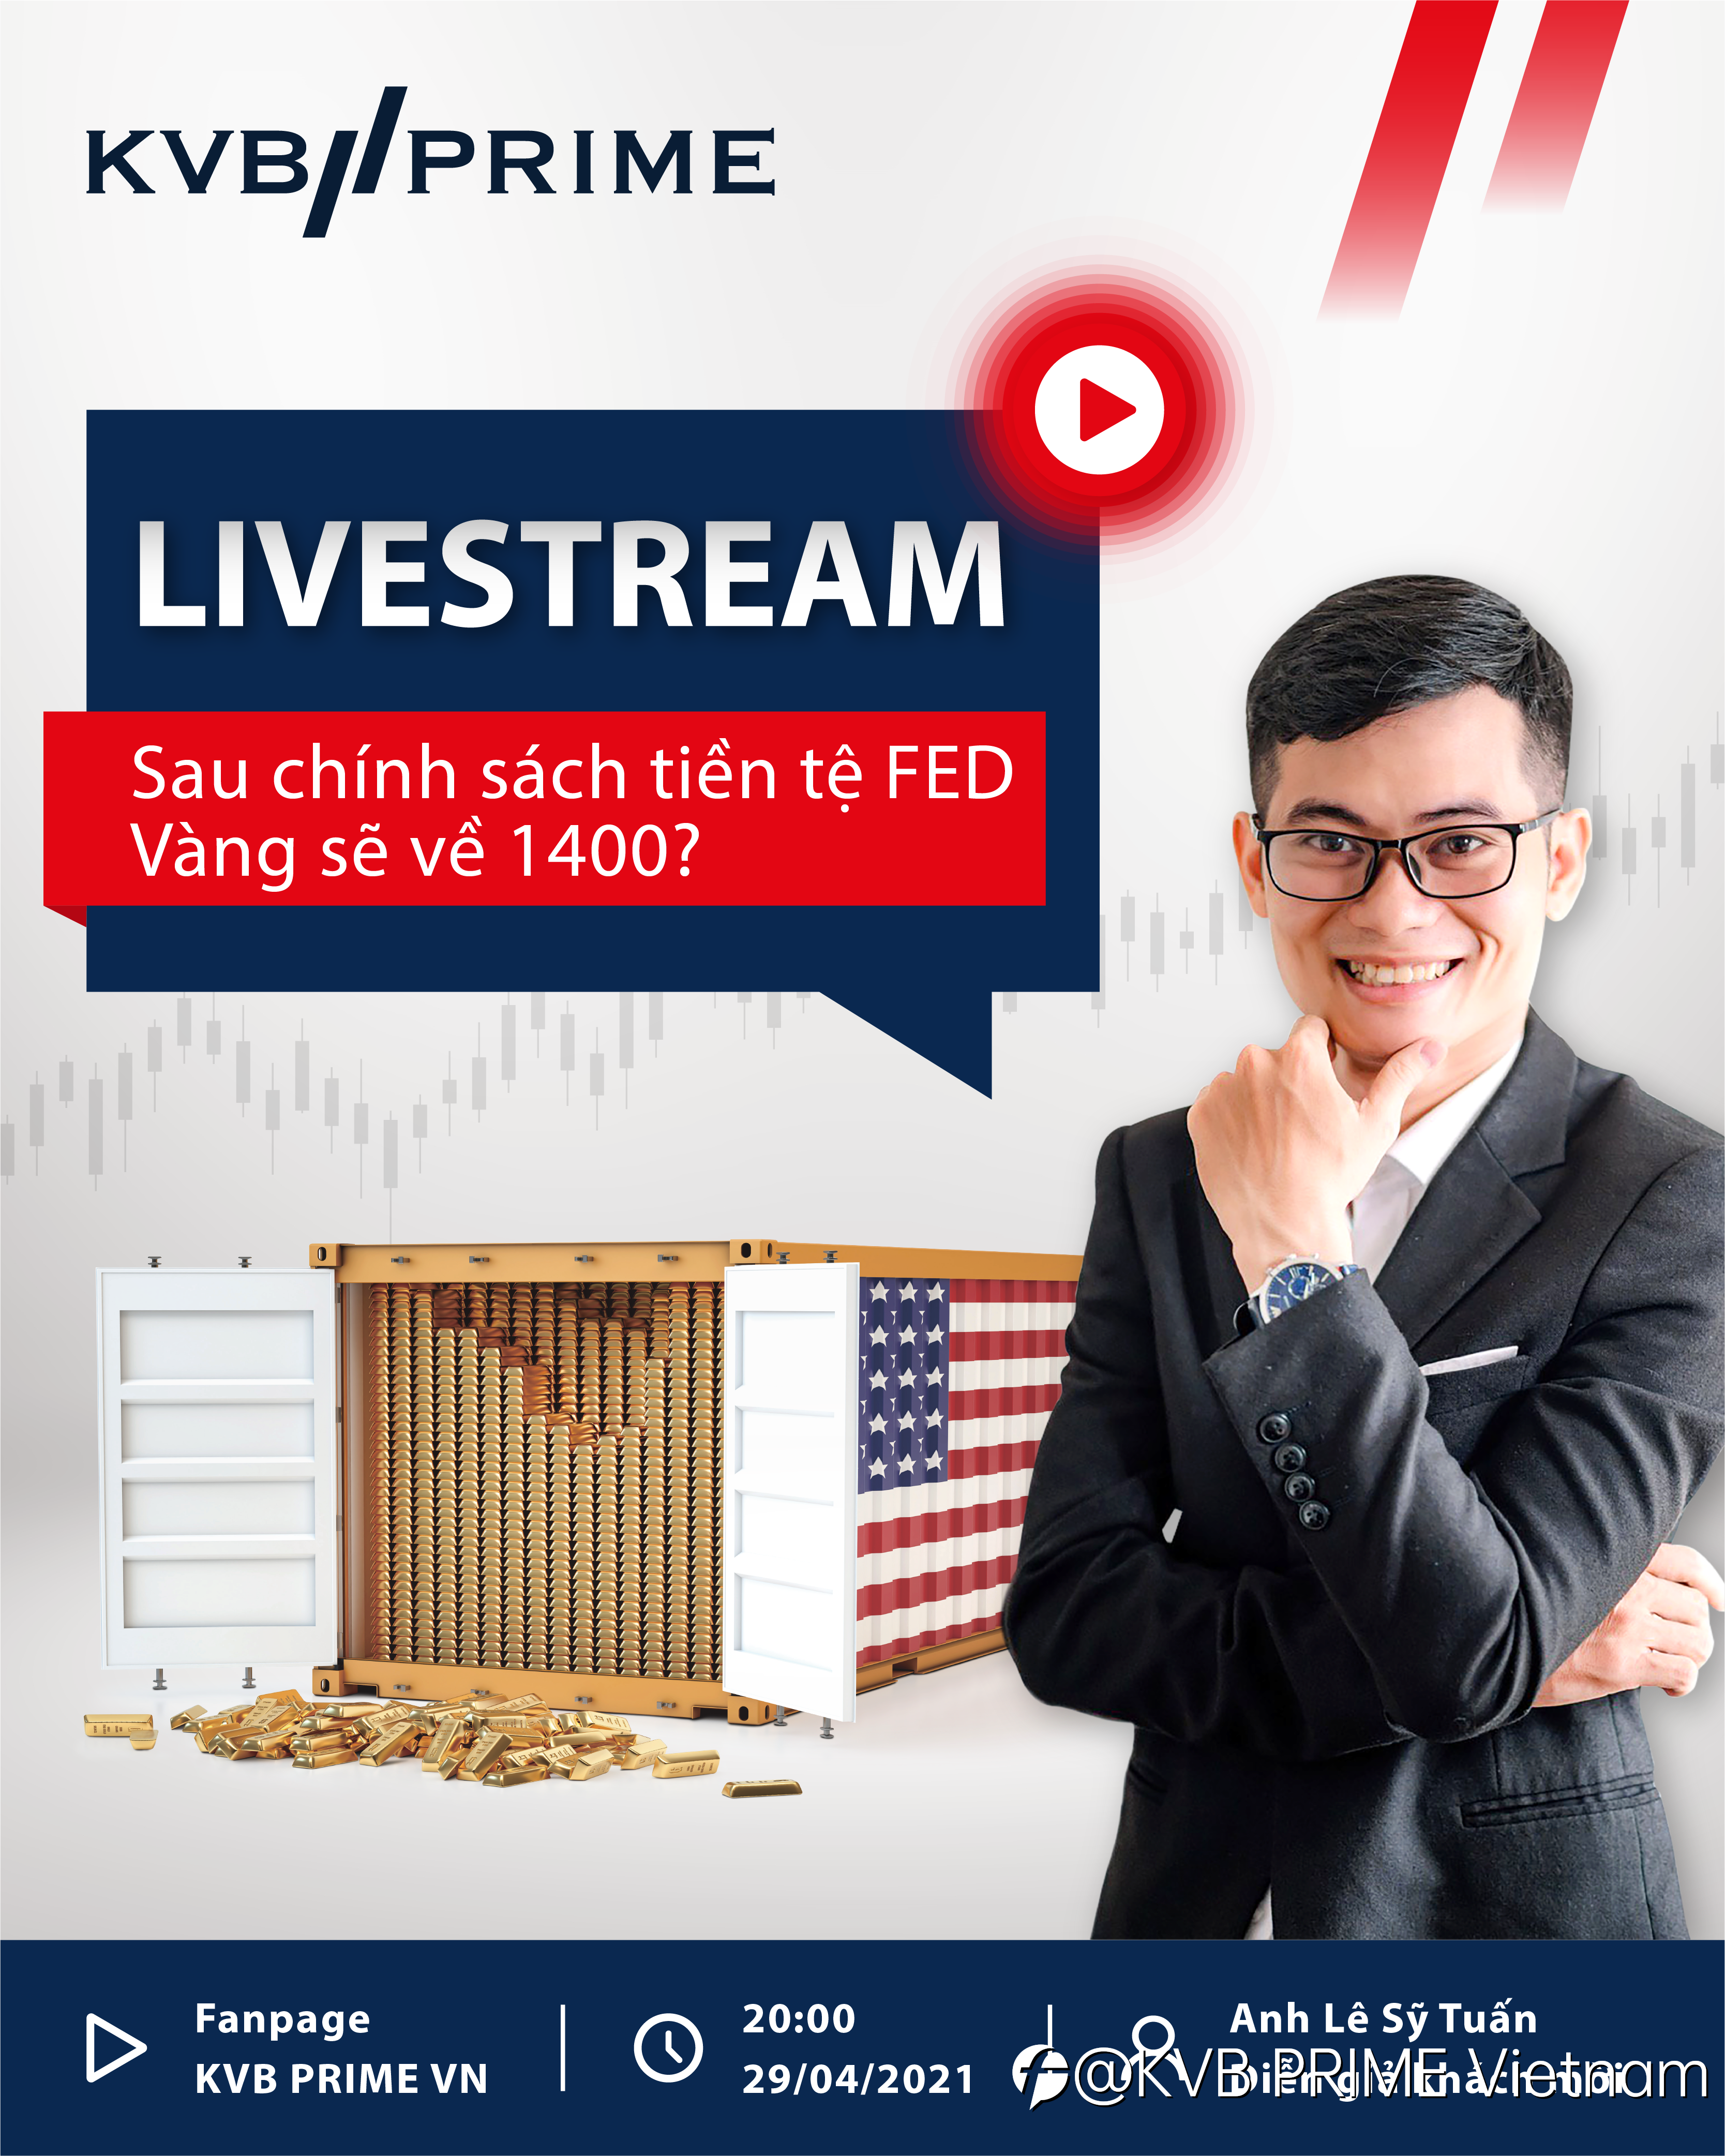 Livestream tháng 4: Liệu Vàng sẽ về 1400 sau chính sách tiền tệ FED?